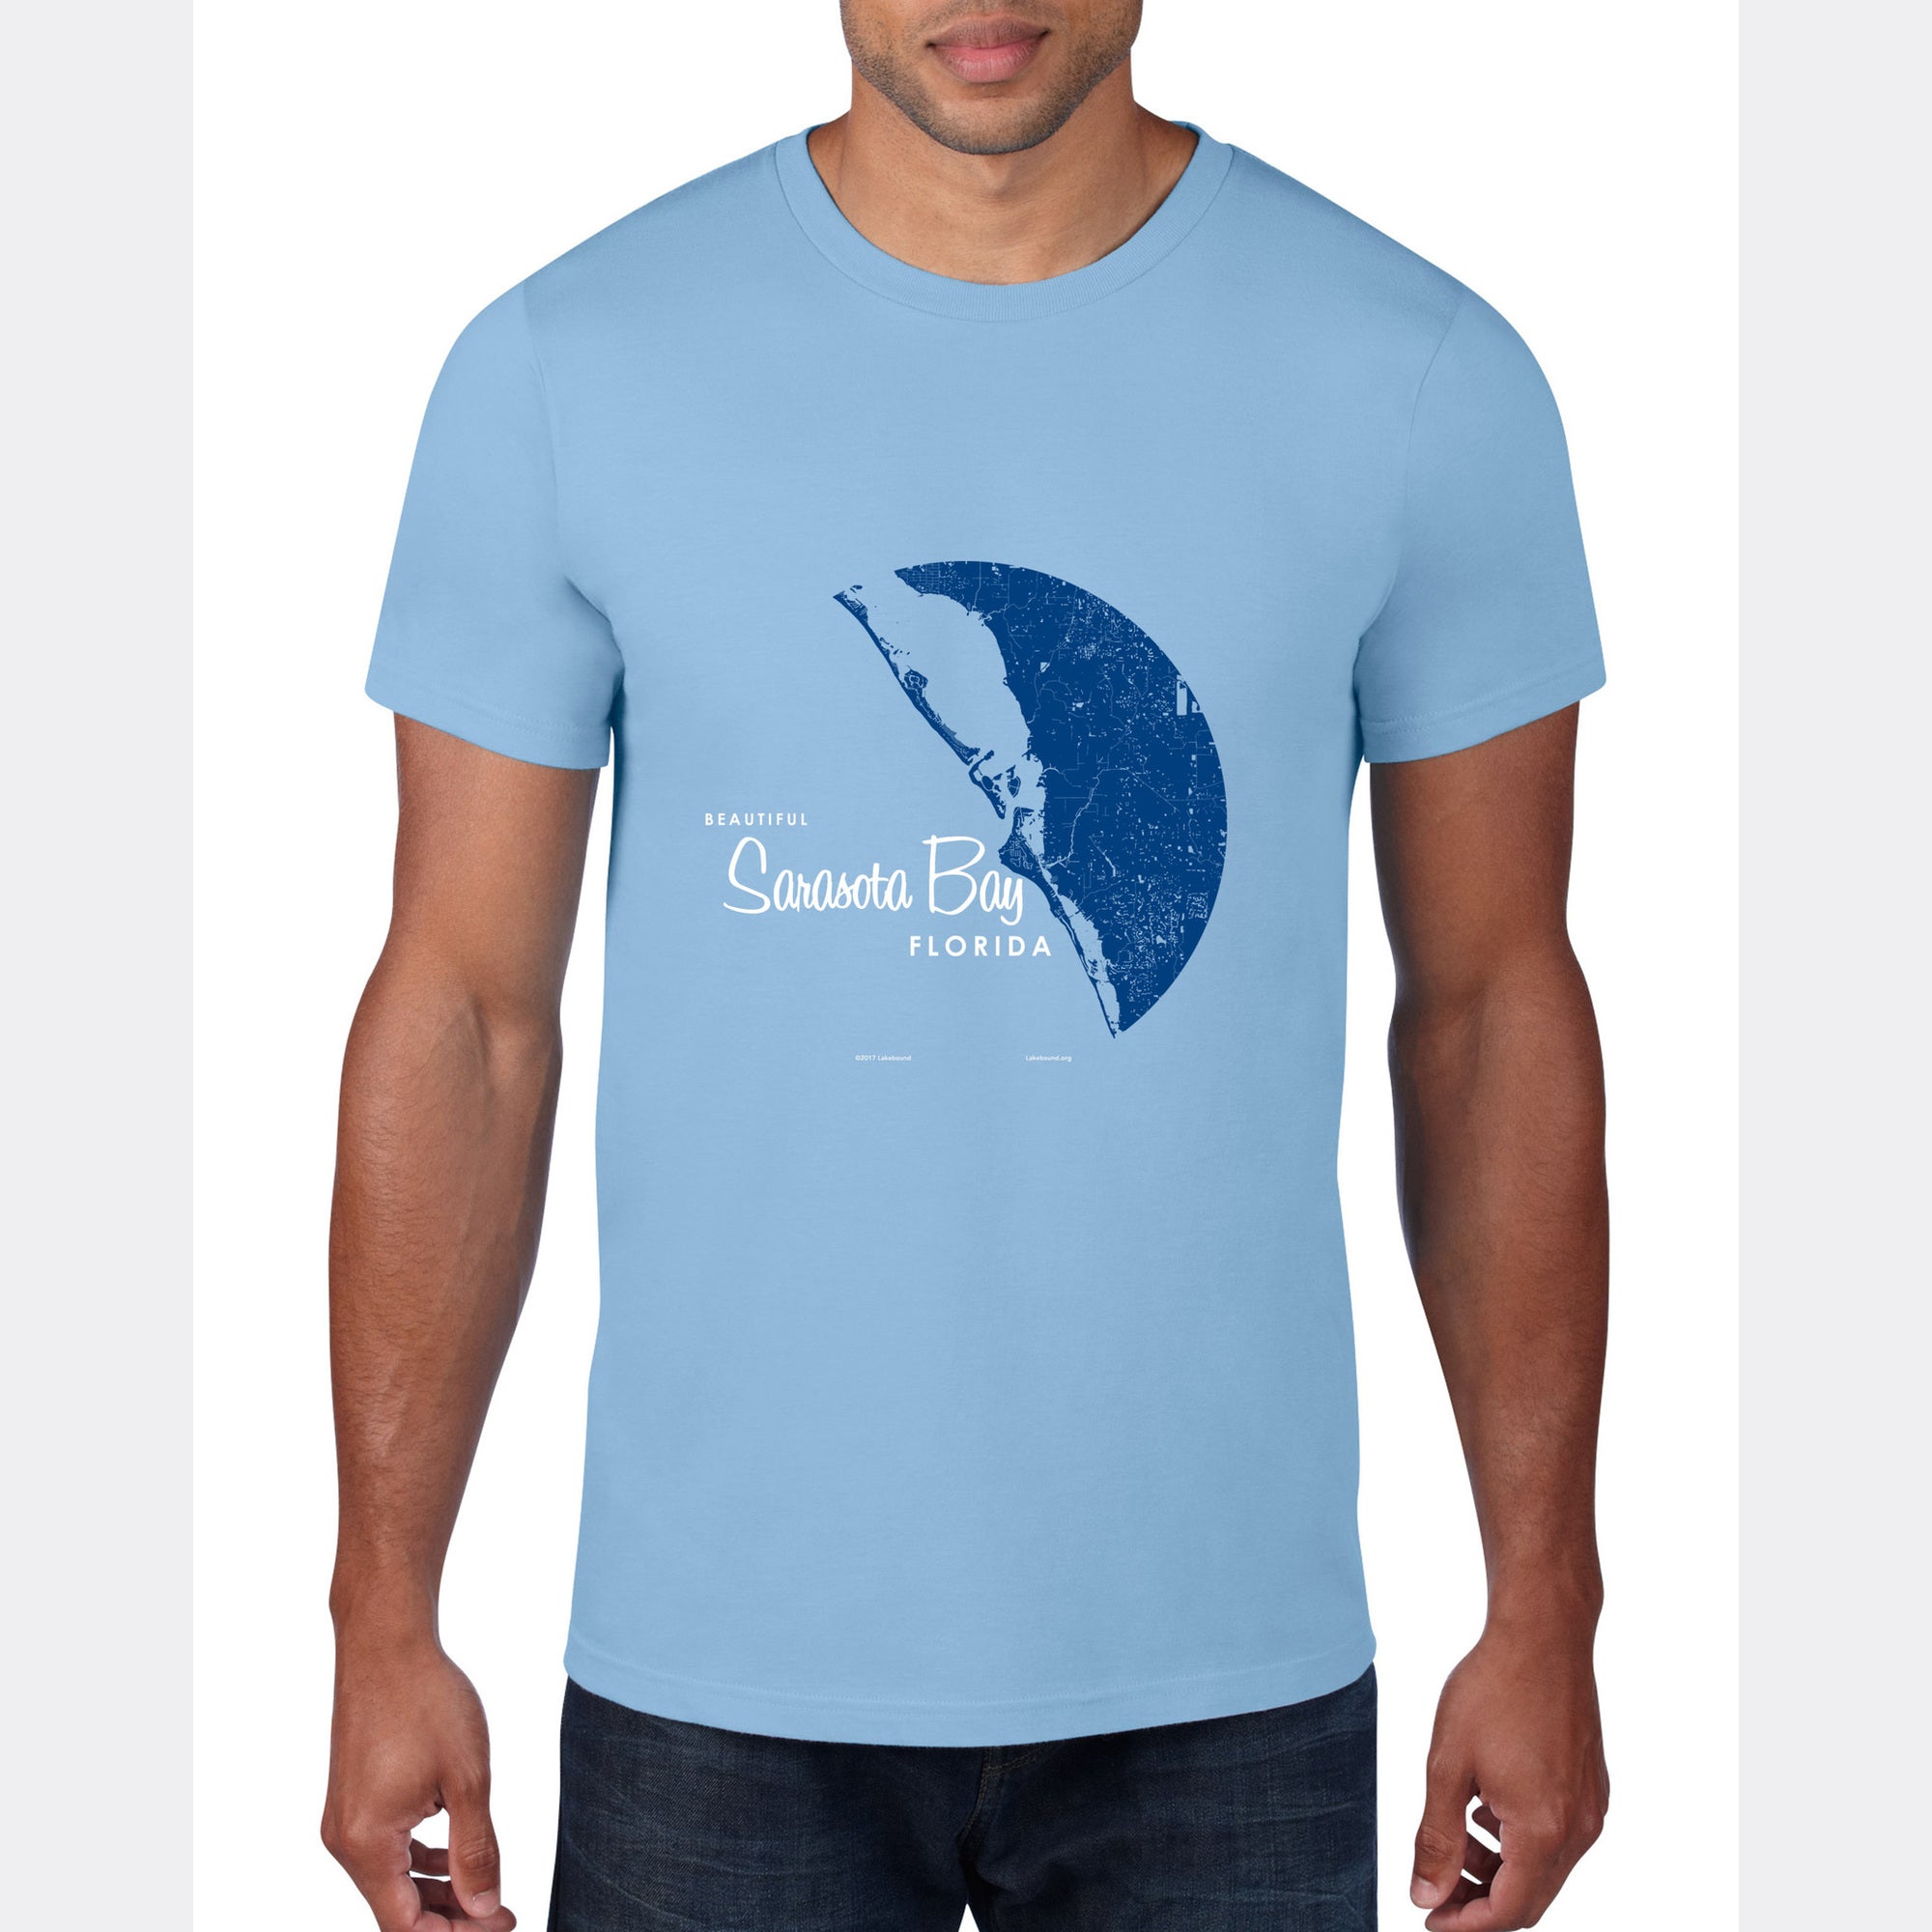 Sarasota Bay Florida, T-Shirt